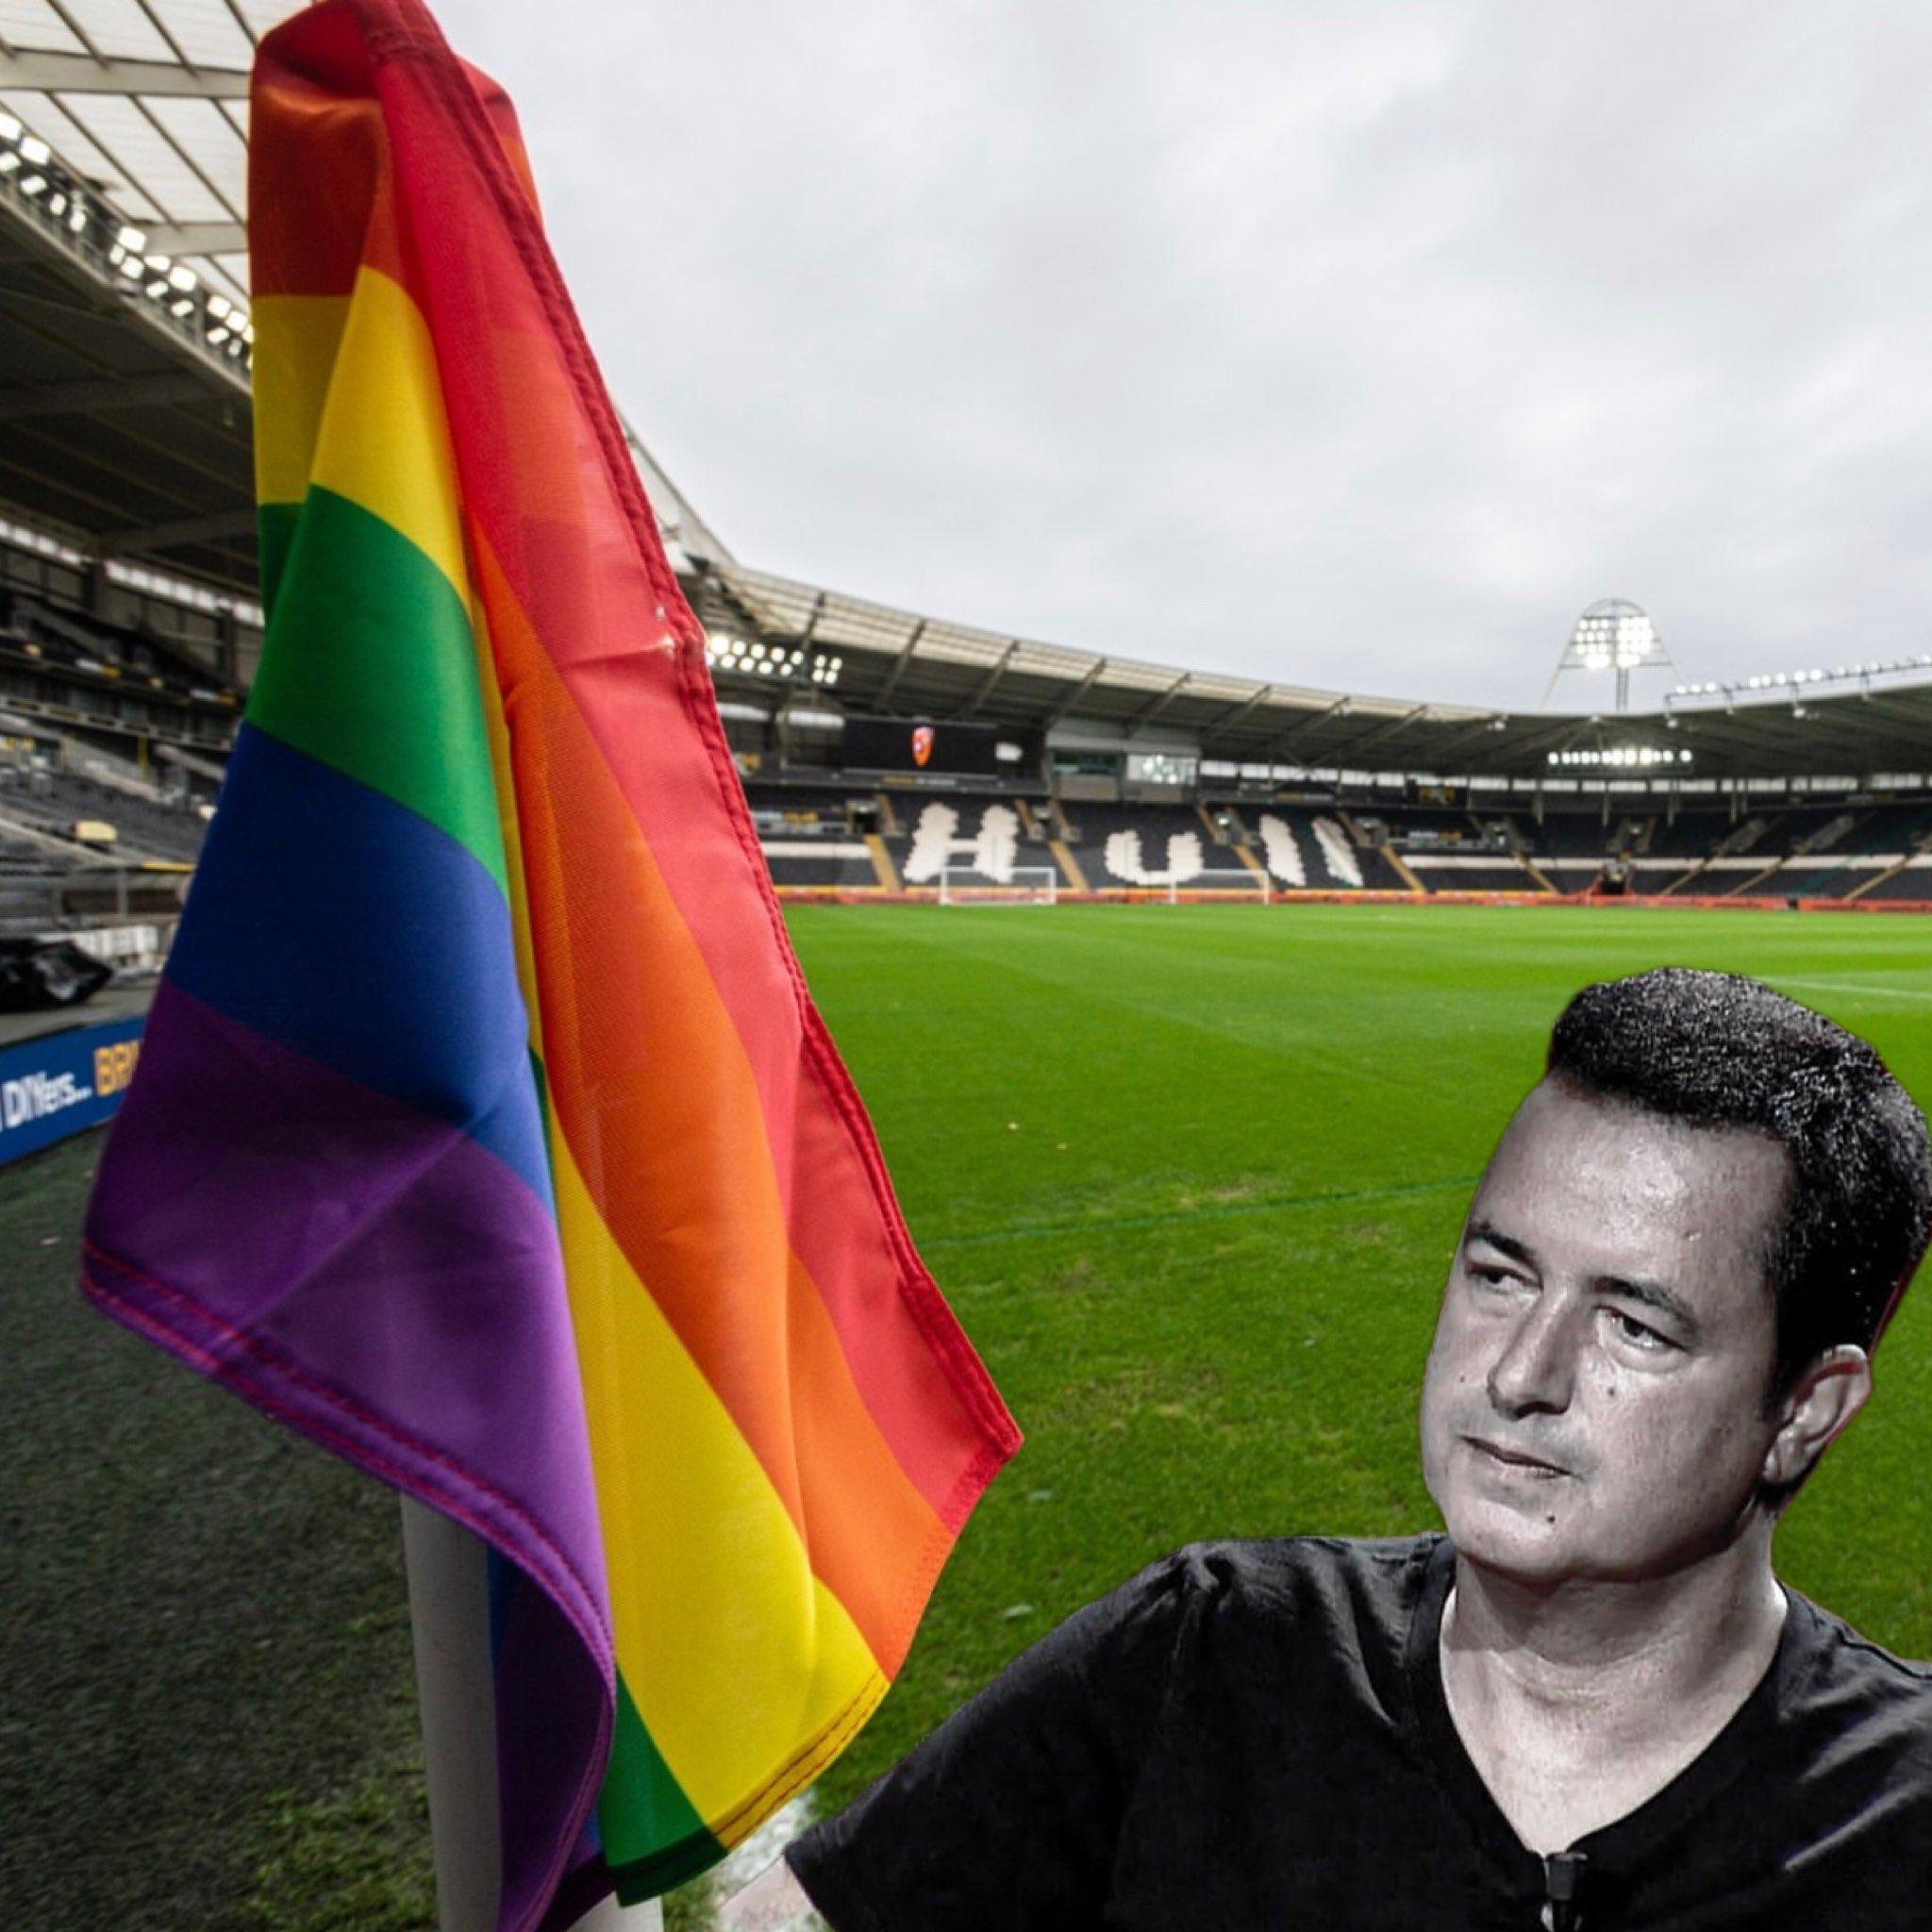 Erdem Özveren on Twitter: "1) Acun Ilıcalı'nın sahibi olduğu Hull City takımı eşcinselliği desteklemek için köşe bayrakları, kaptanlık bandı, yedek oyuncu panosu ve sosyal medya logolarını LGBT renklerine dönüştürme kararı aldı. https://t.co/Df7pVTnPSR" /